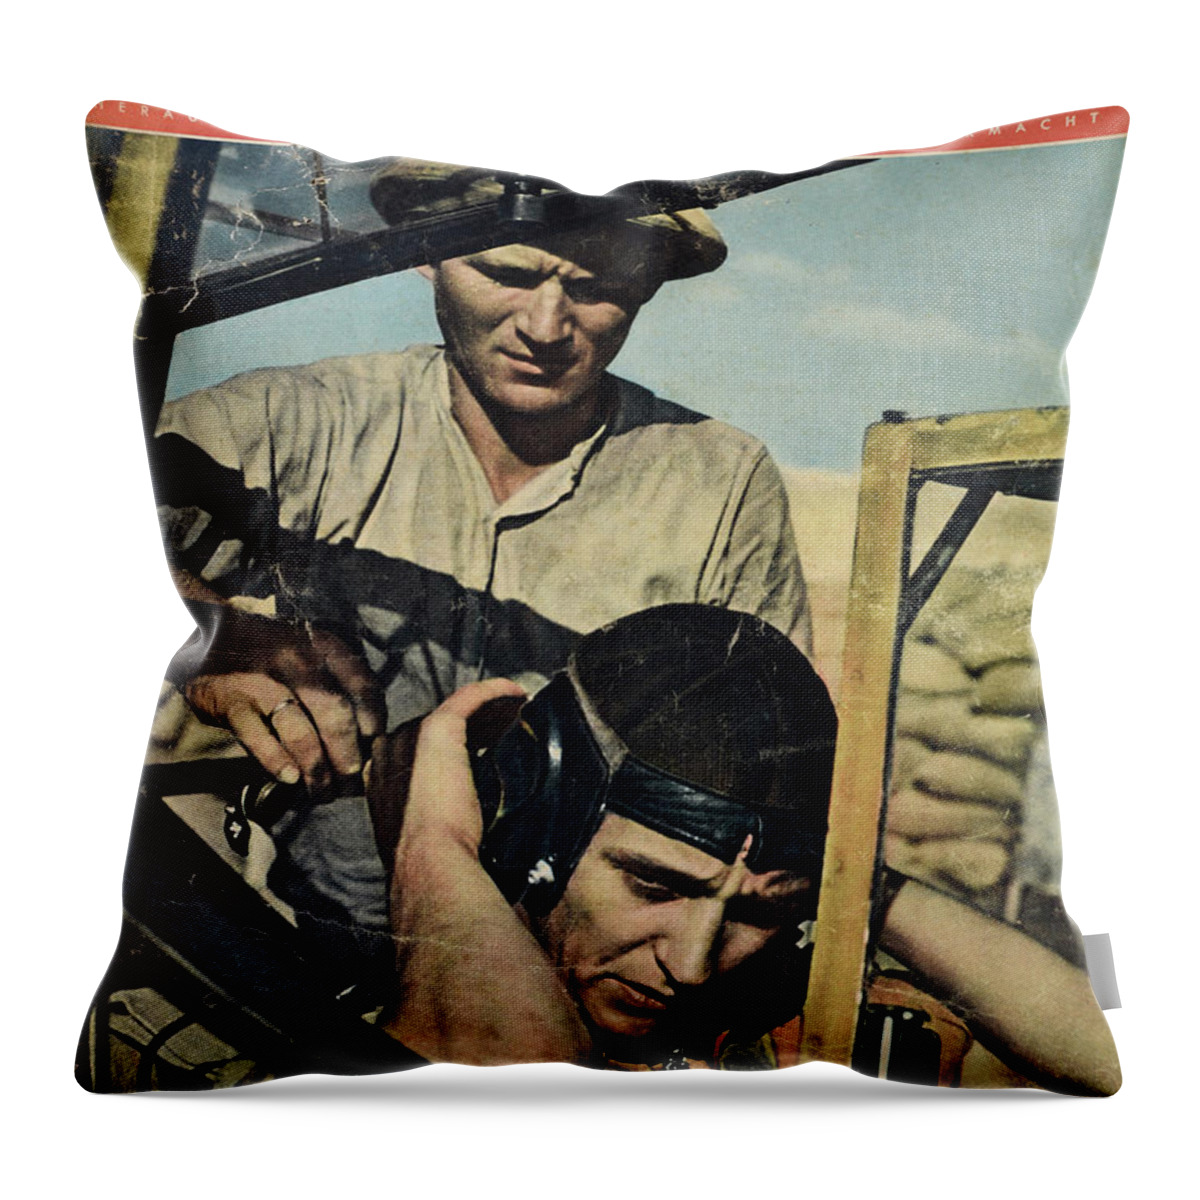 Luftwaffe Throw Pillow featuring the photograph Hauptmann Marseille by Oleg Konin